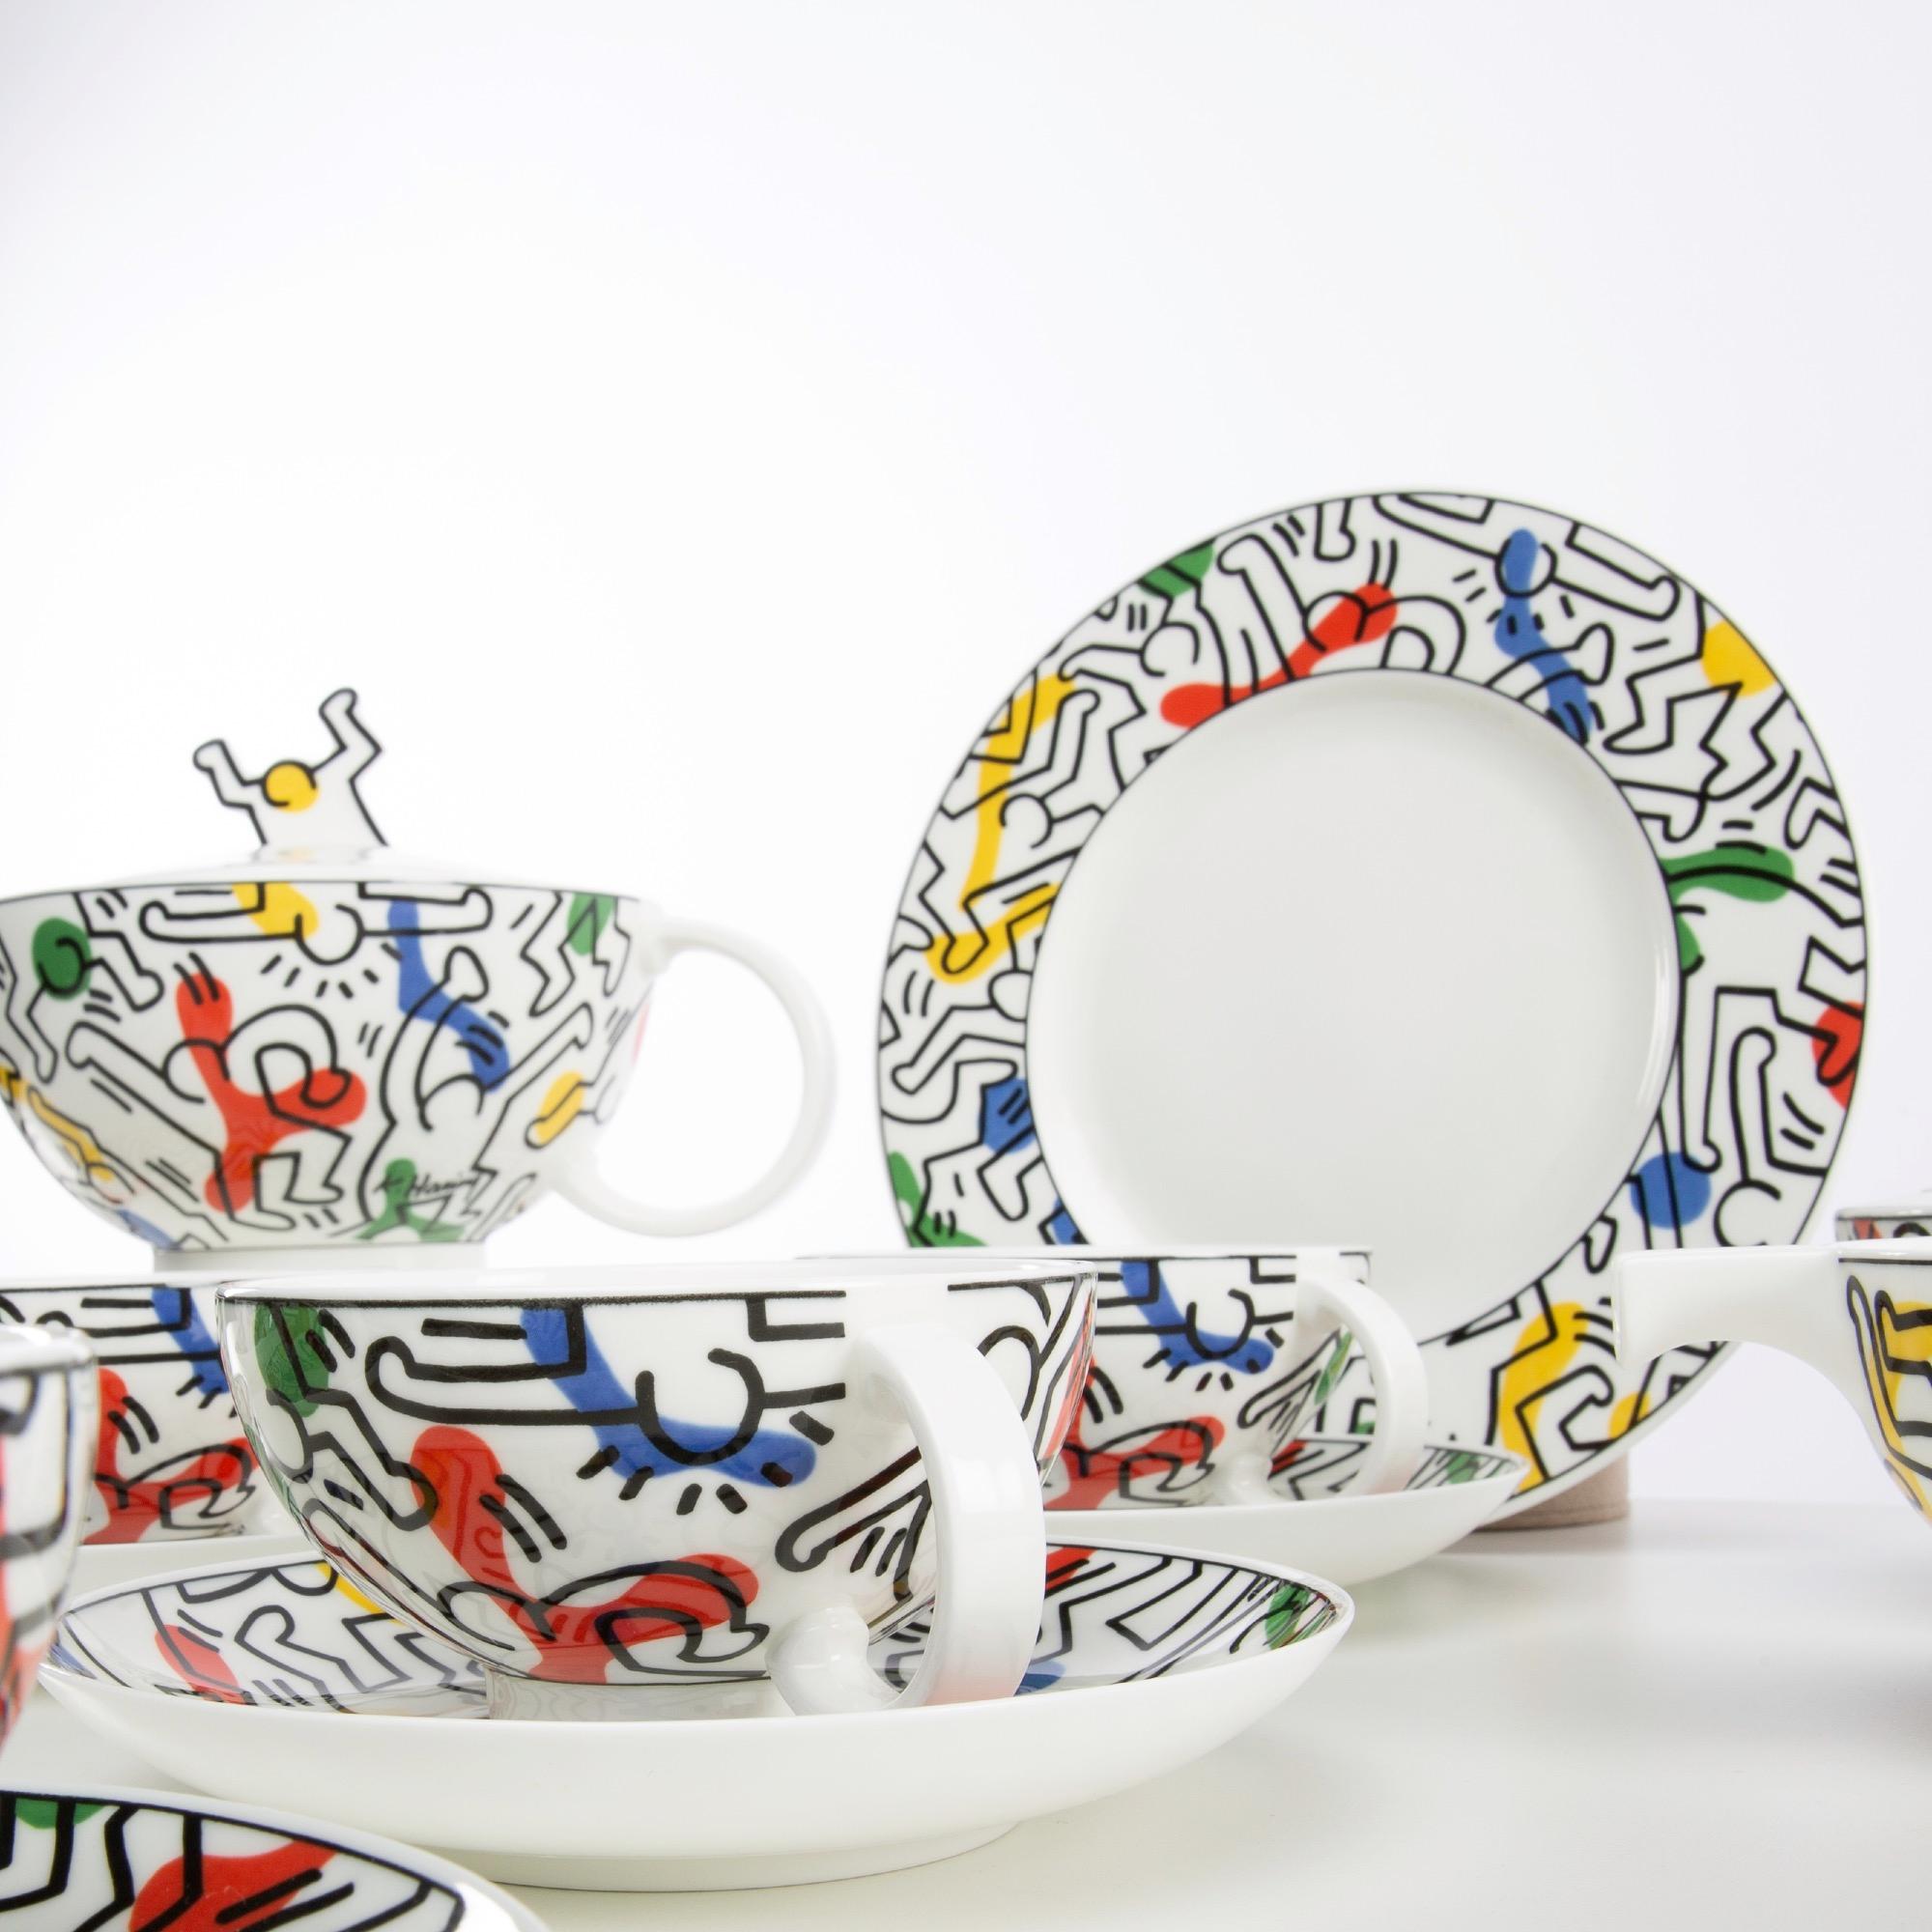 Service à thé en porcelaine de Villeroy & Boch, décoré de dessins de Keith Haring, produit en 1991.
Limité à 500 exemplaires
Veuillez noter que le grand plat de service et le certificat sont manquants.
Mesures : 1x crémier (Hauteur 6 cm /